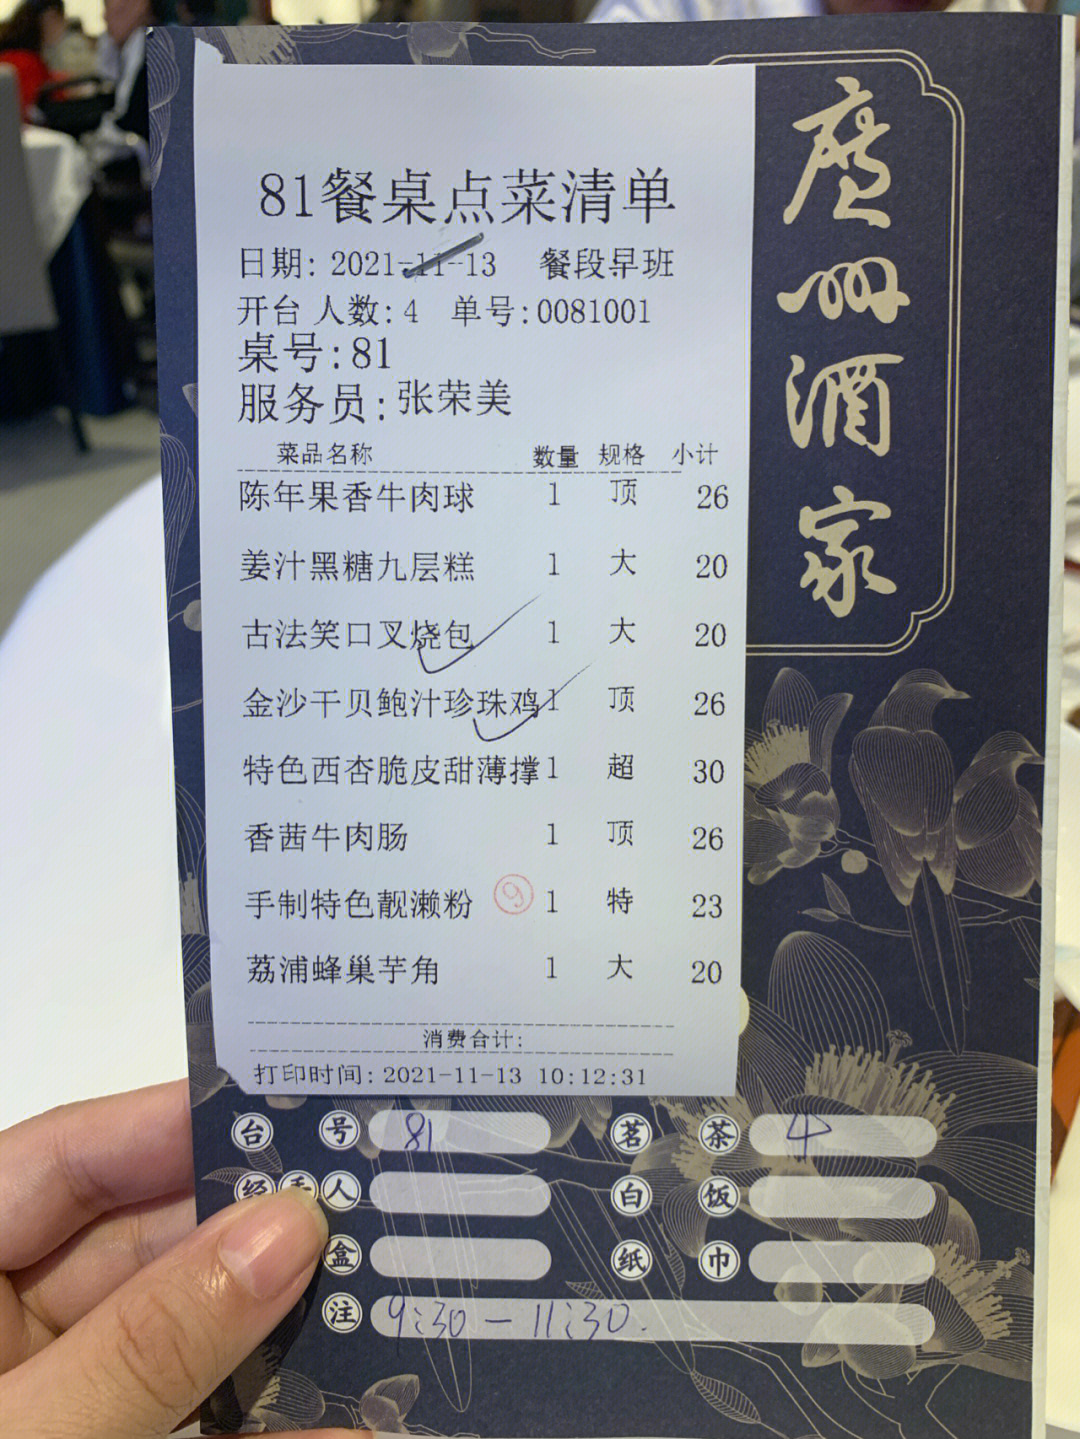 广州酒家早茶菜单图片